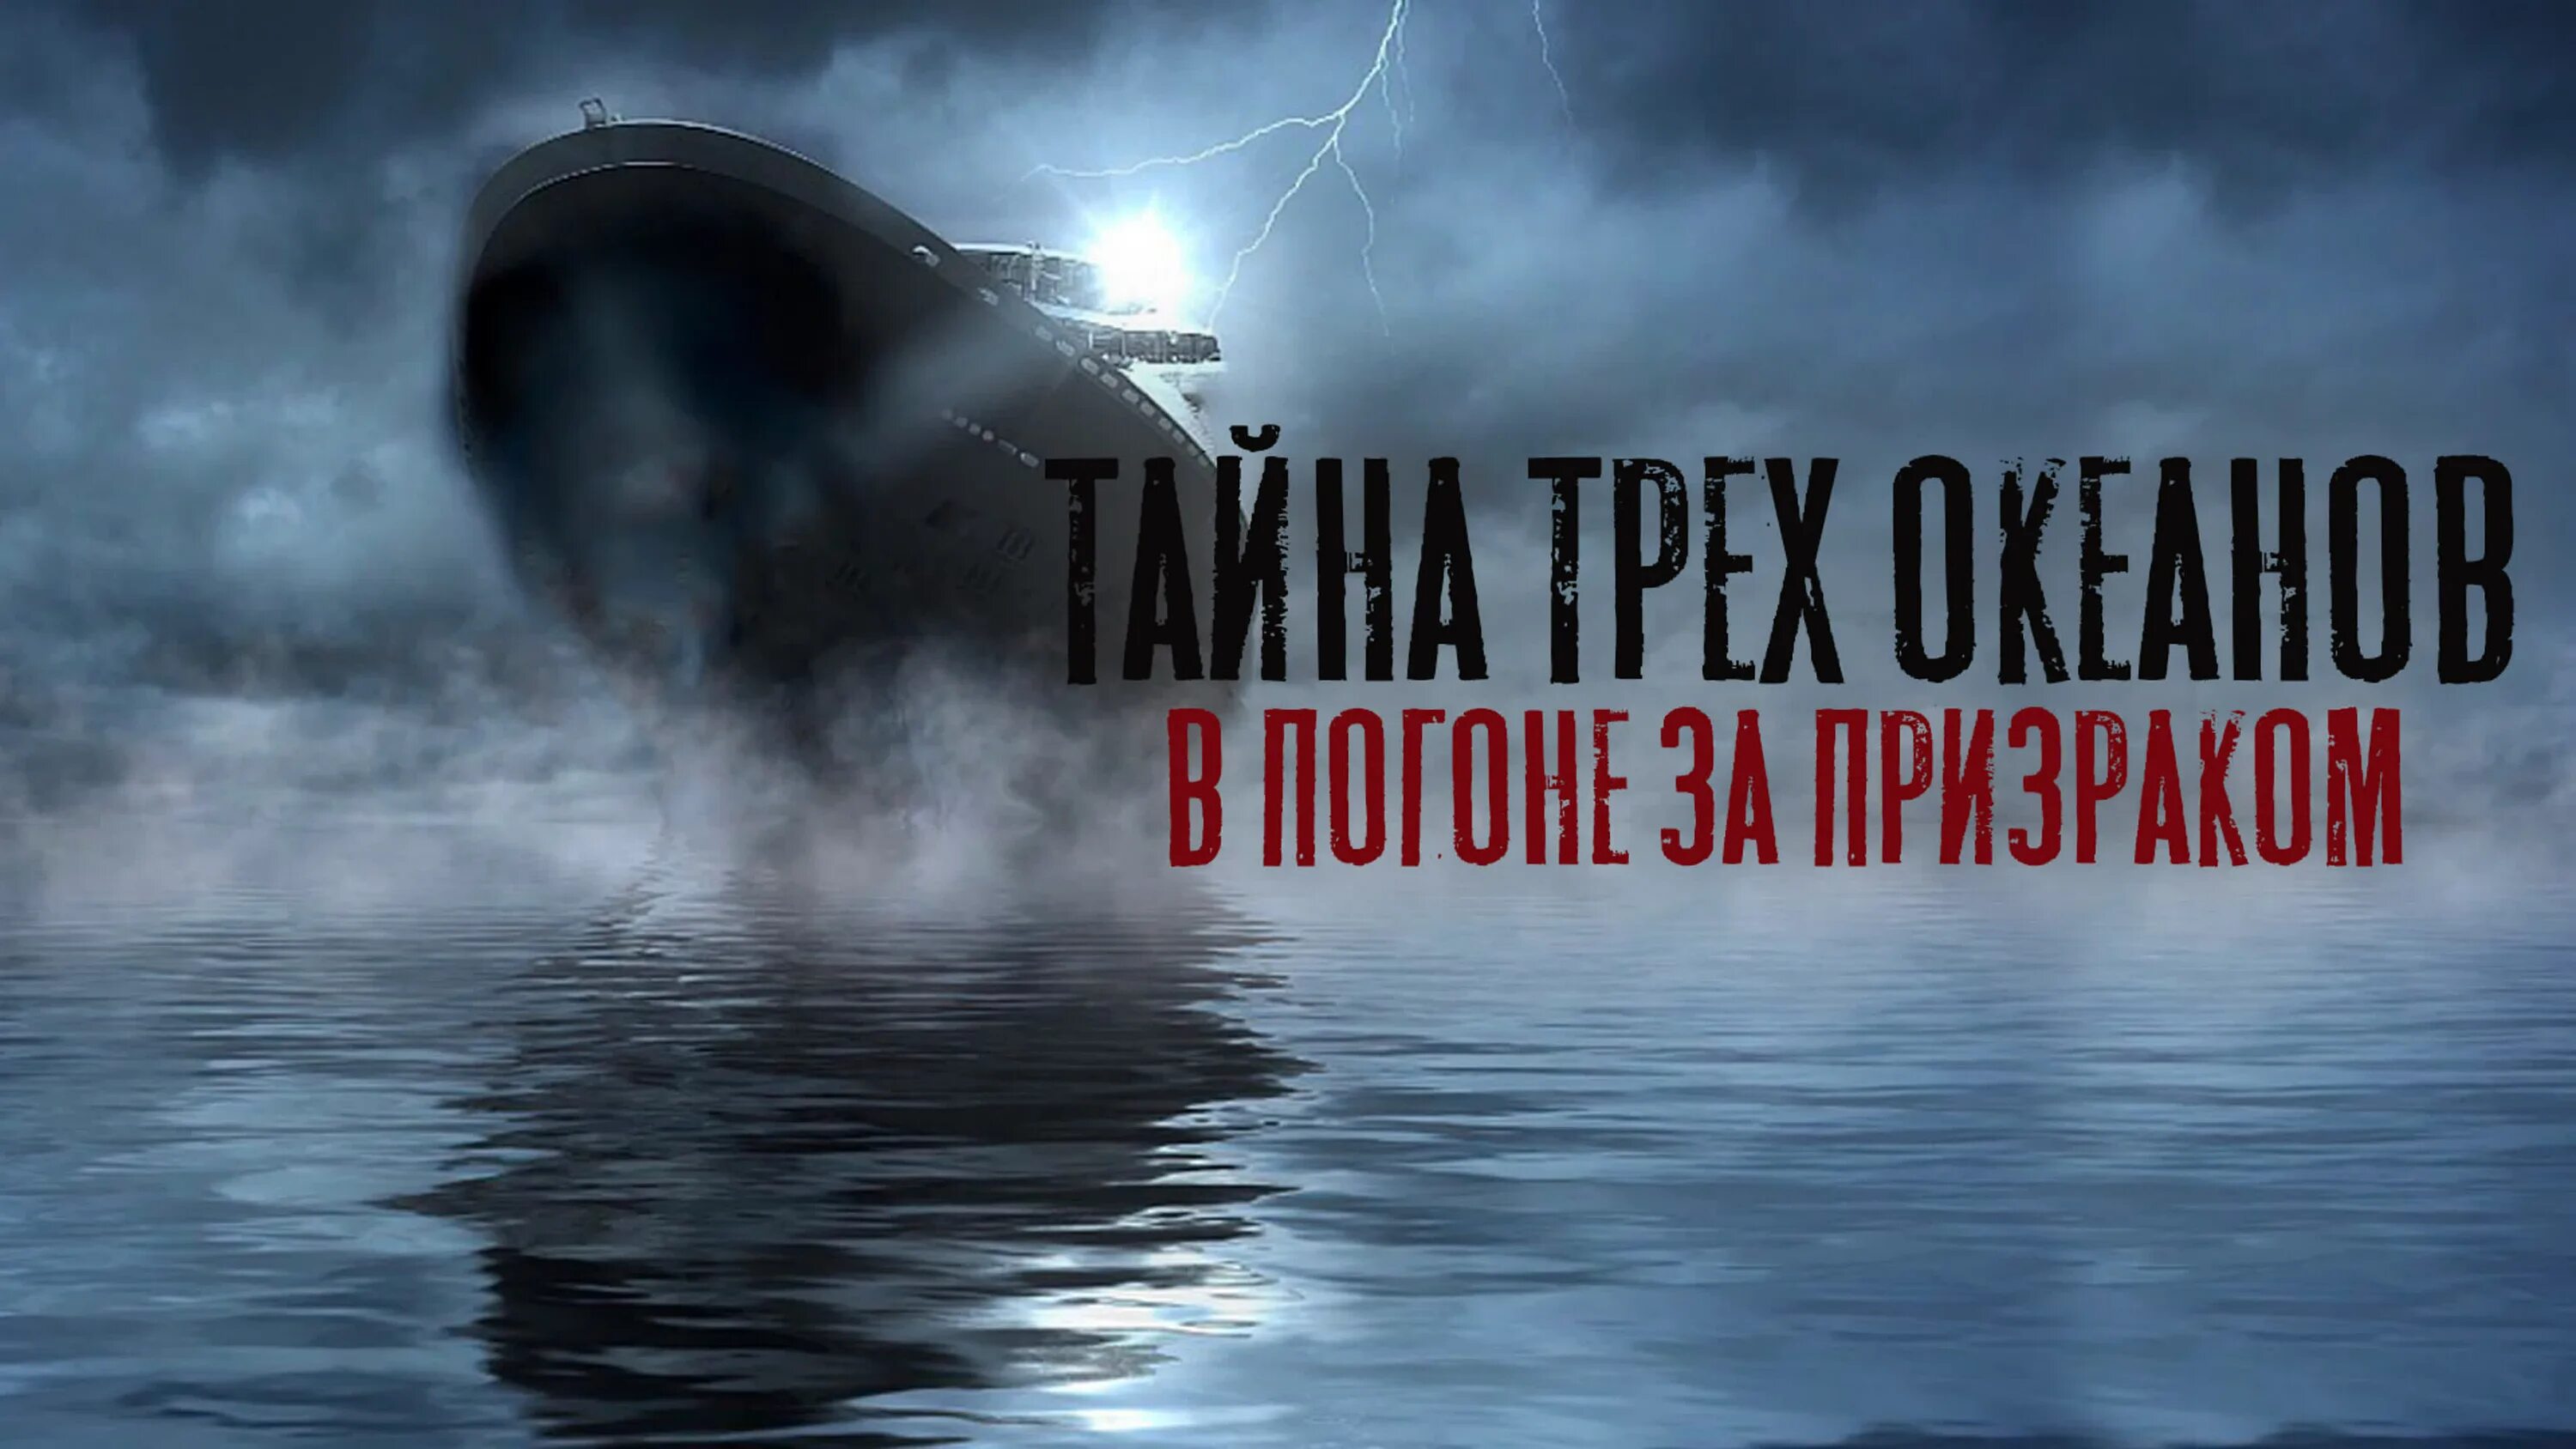 Субмарина призрак. Субмарина «призрак» (1999. Призрак в океане. Включи 3 океана